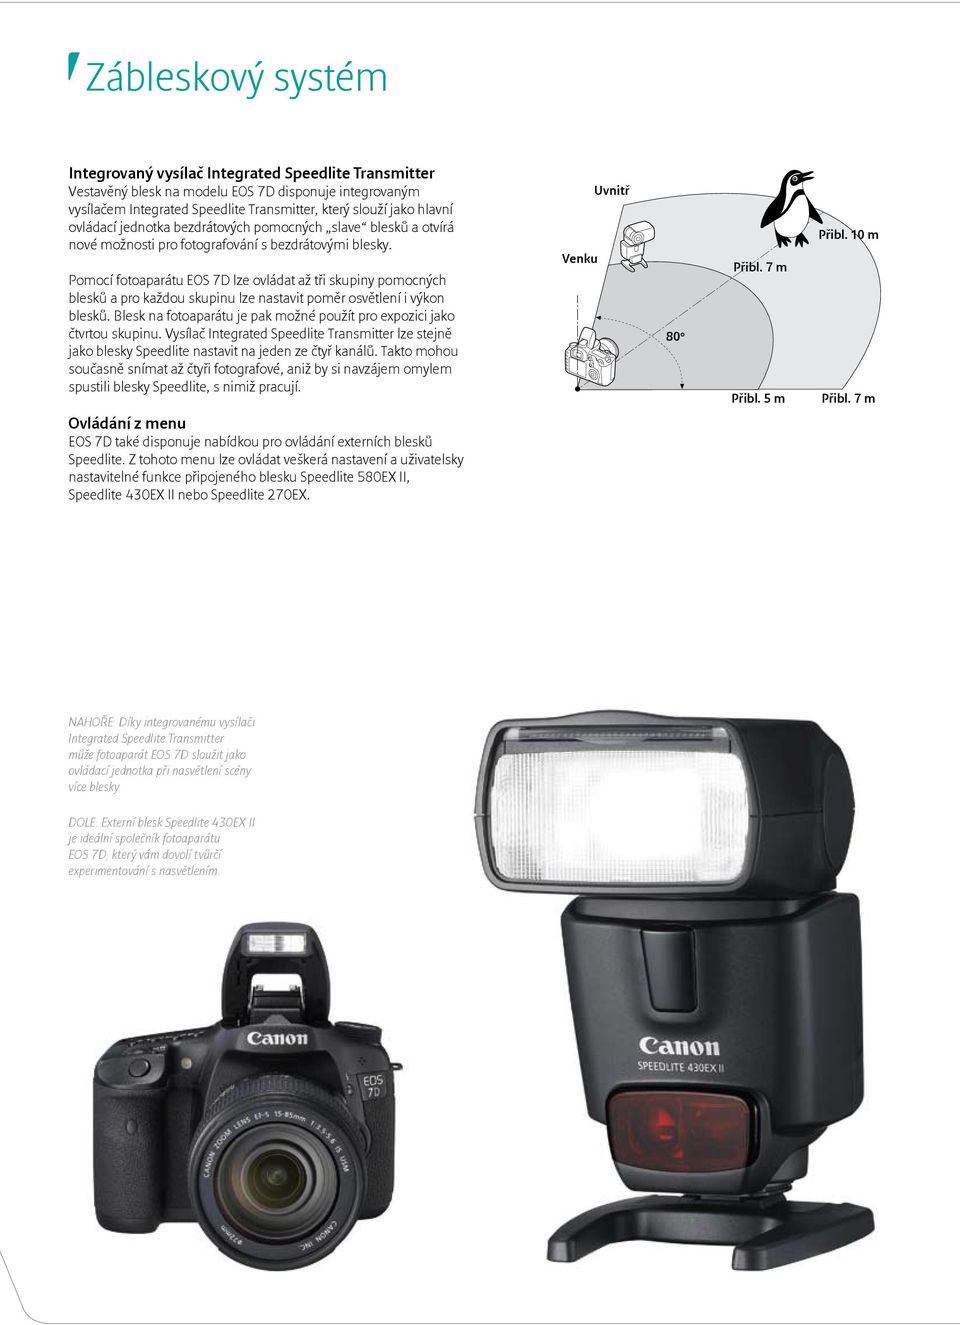 Pomocí fotoaparátu EOS 7D lze ovládat až tři skupiny pomocných blesků a pro každou skupinu lze nastavit poměr osvětlení i výkon blesků.